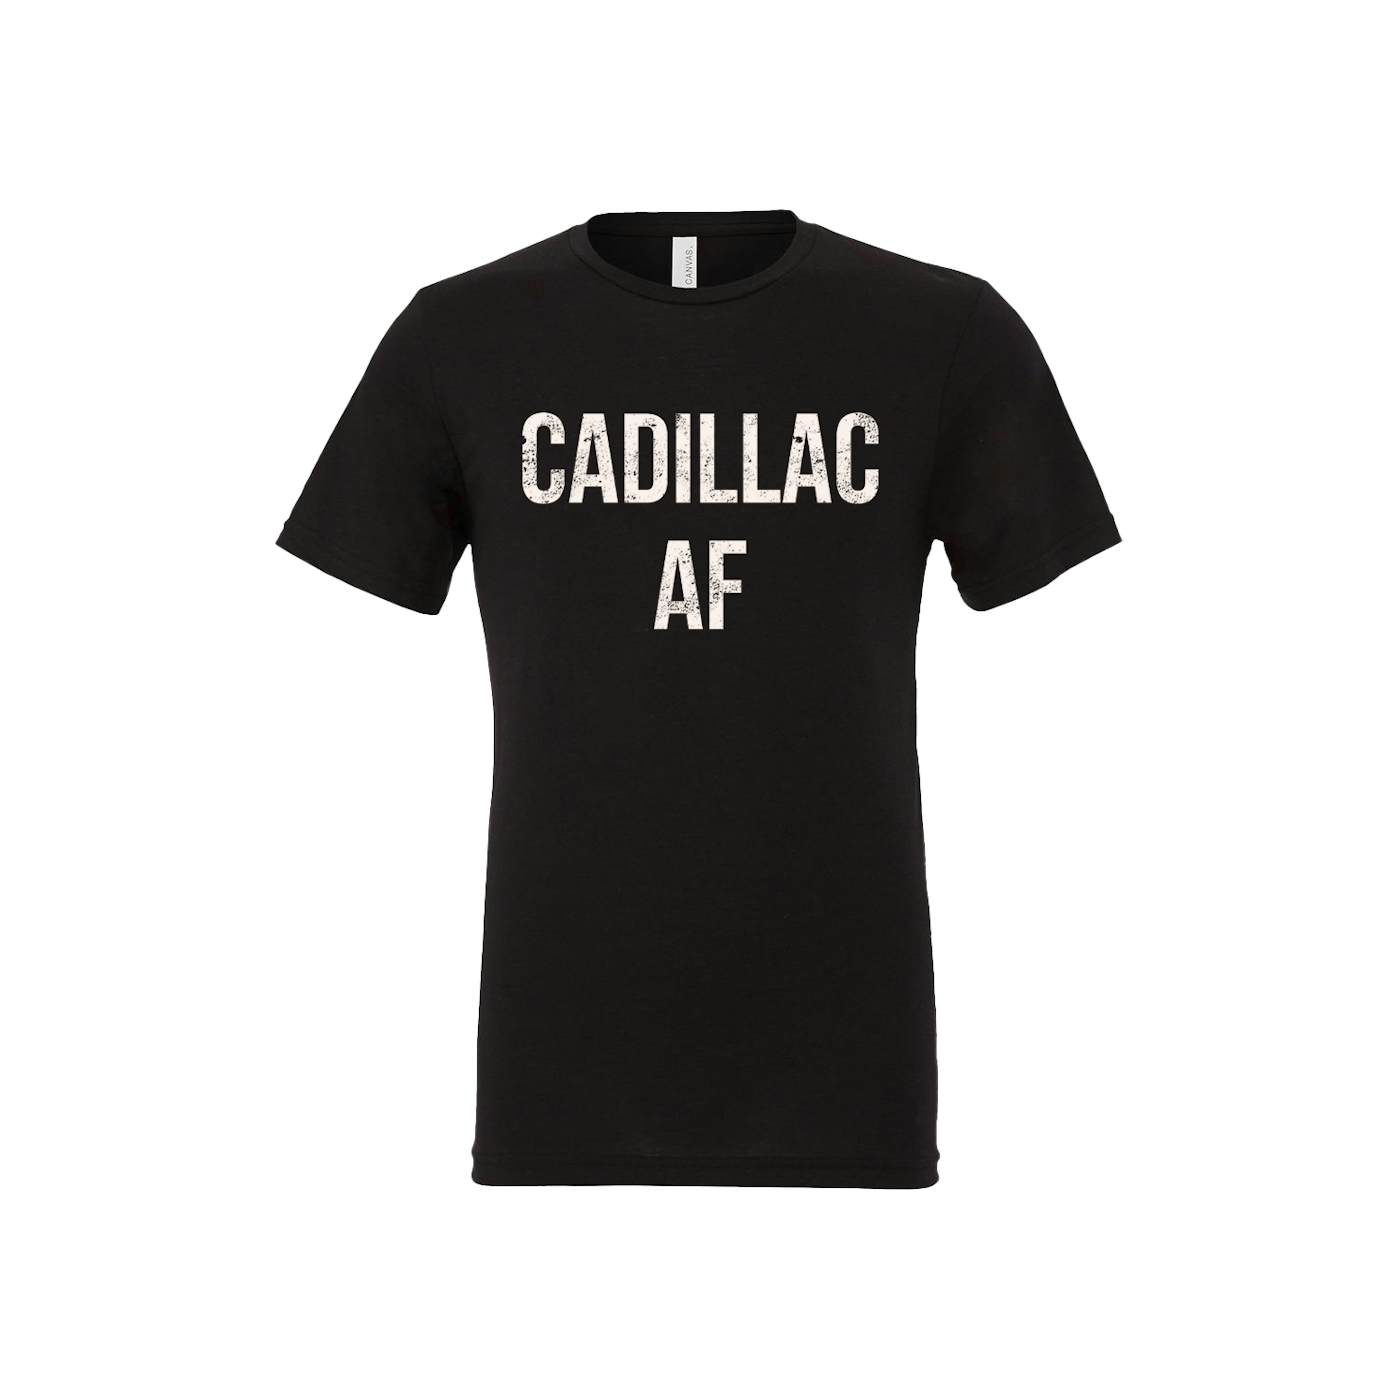 The Cadillac Three CADILLAC AF Tee